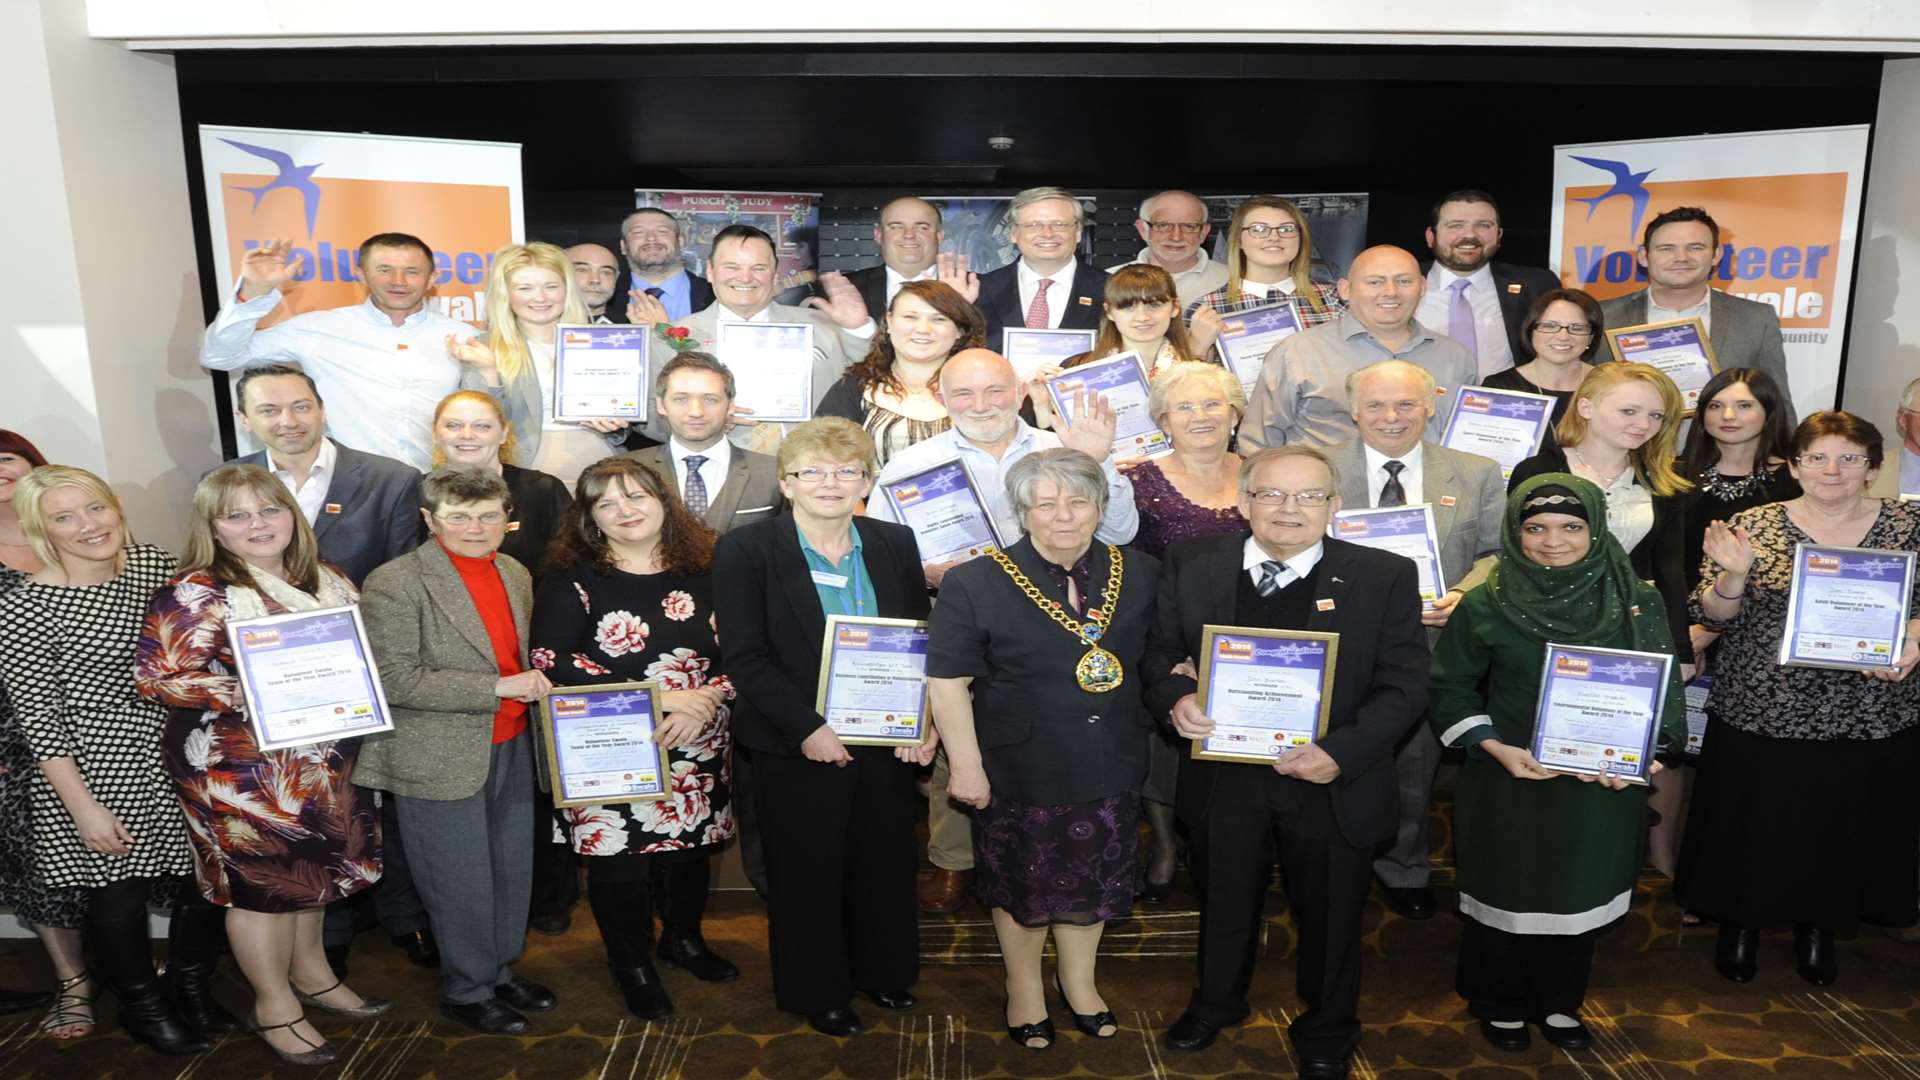 Last year's Swale Volunteer Awards' winners